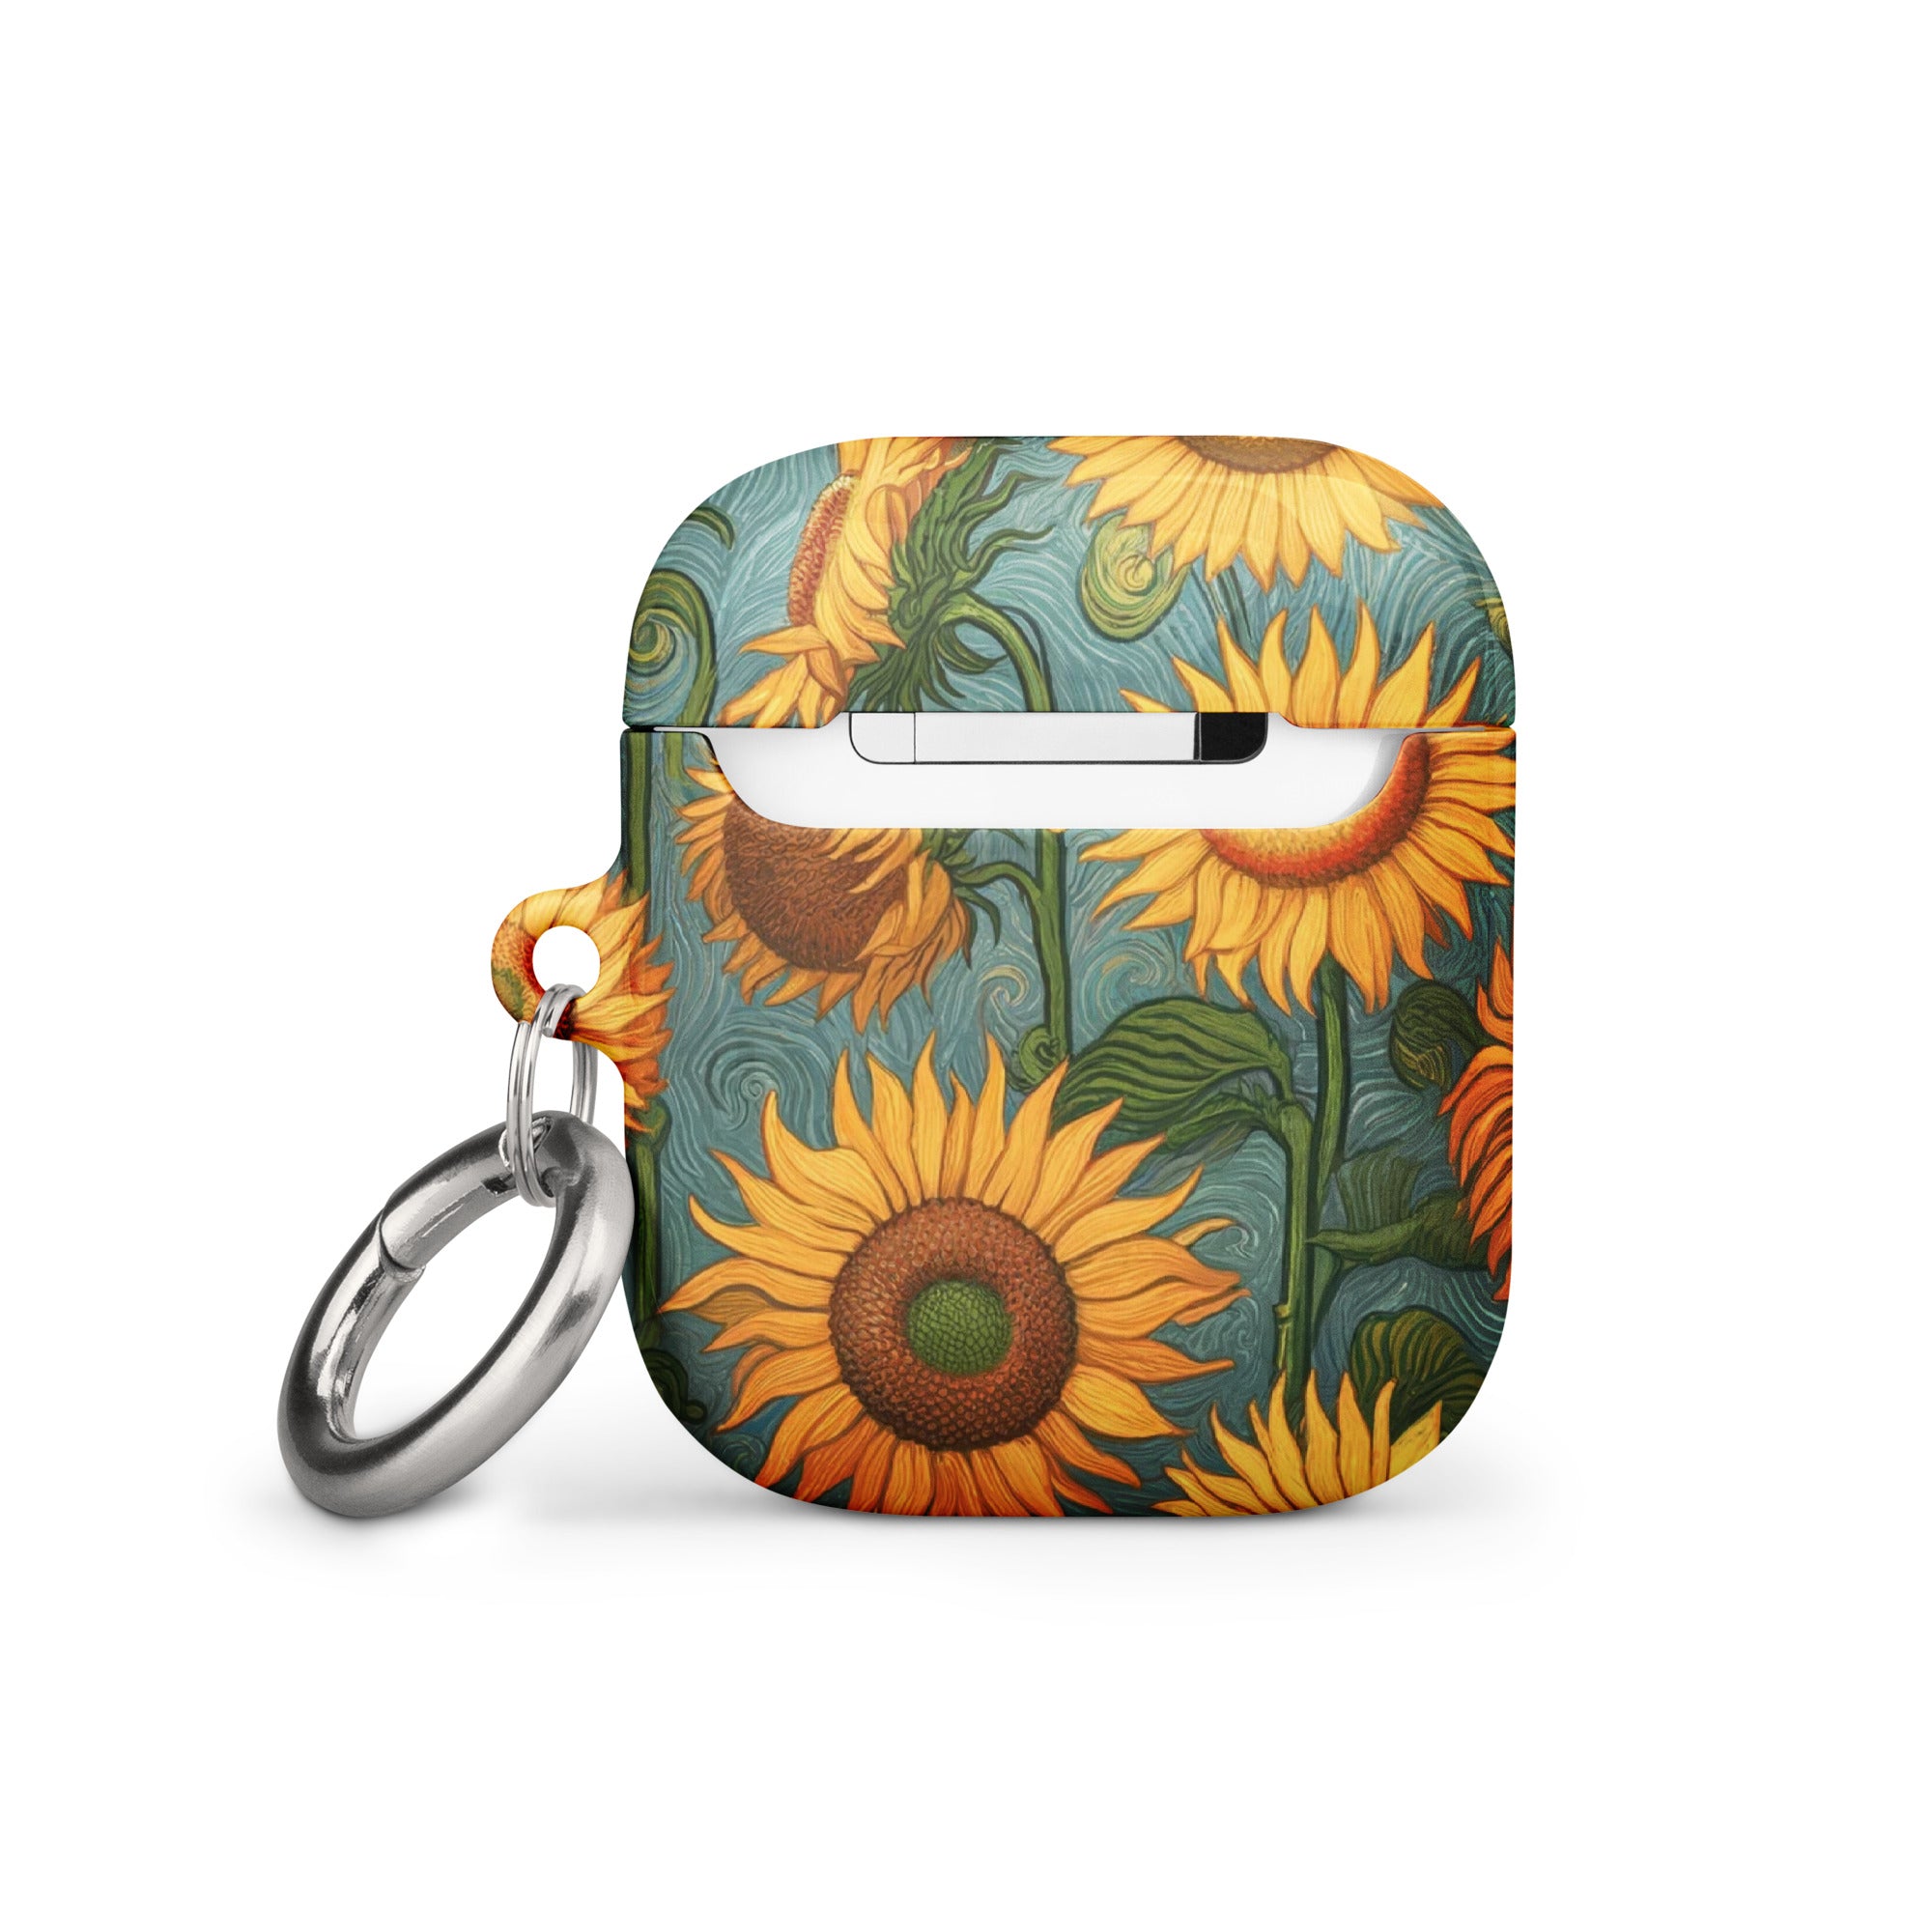 Vincent van Gogh „Sonnenblumen“, berühmtes Gemälde, AirPods®-Hülle | Premium-Kunsthülle für AirPods®